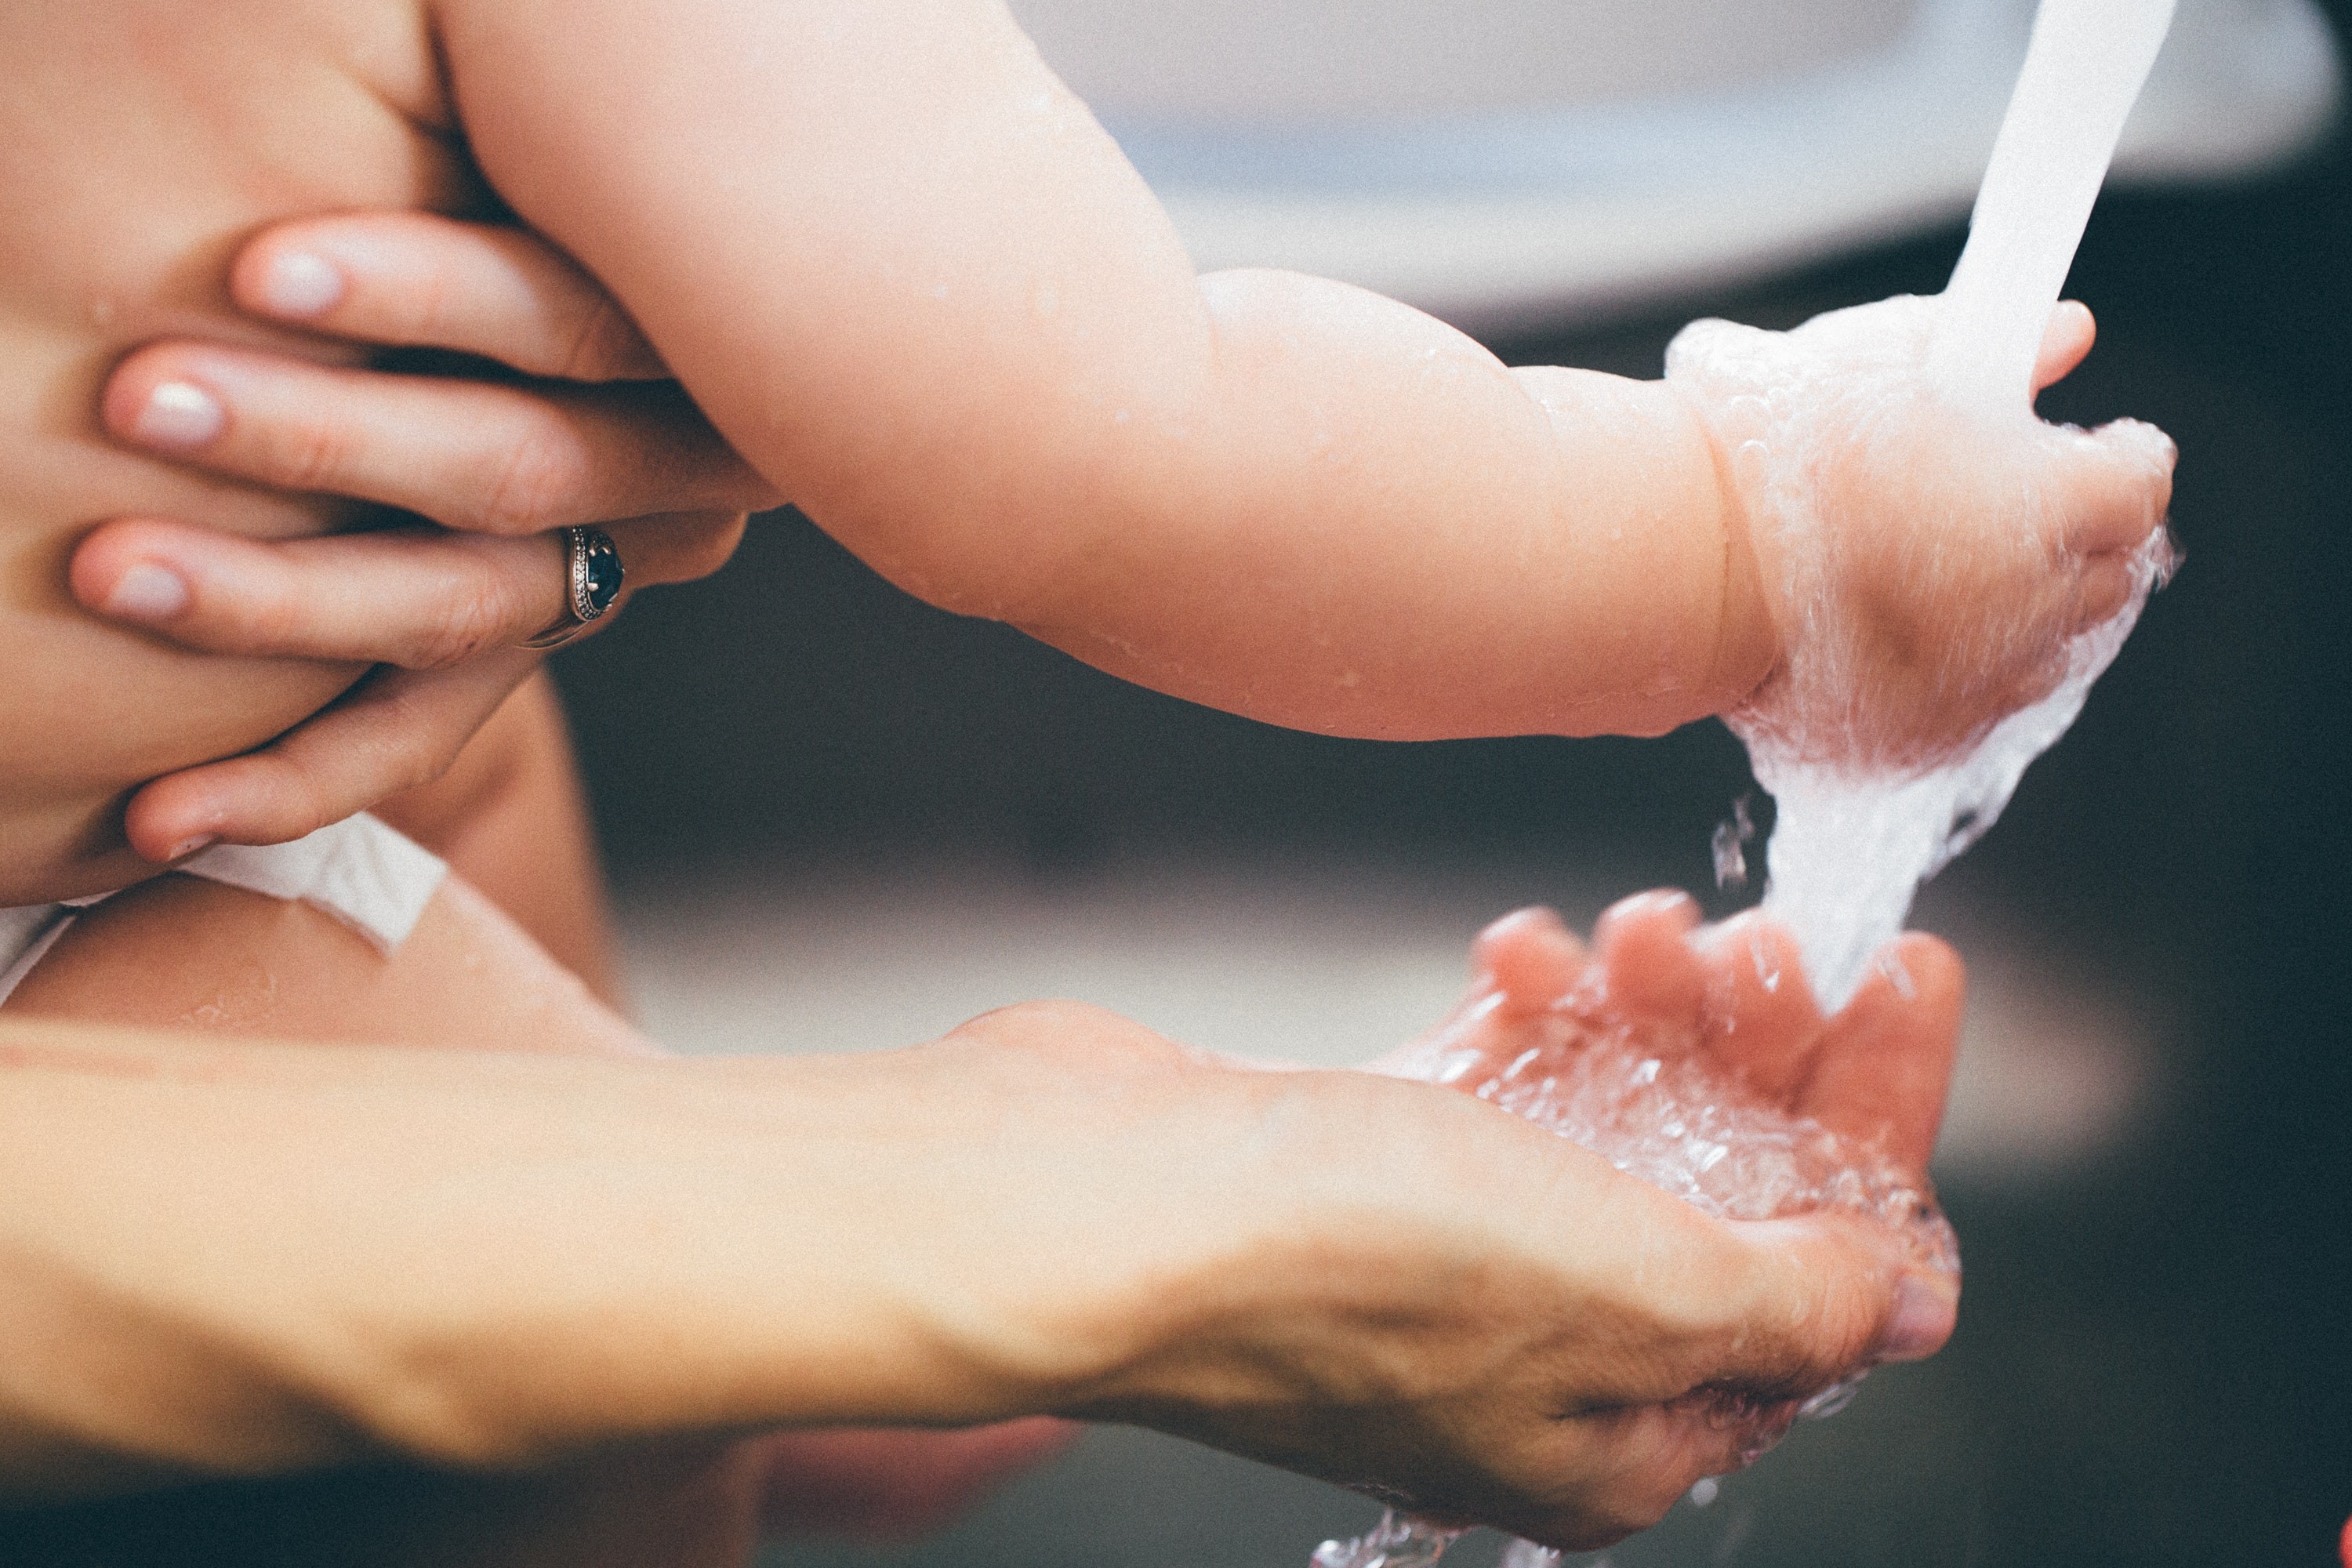 Lavar as mãos com água e sabão com frequência é uma das melhores maneiras de evitar o contágio pelo vírus (Foto: Pexels)